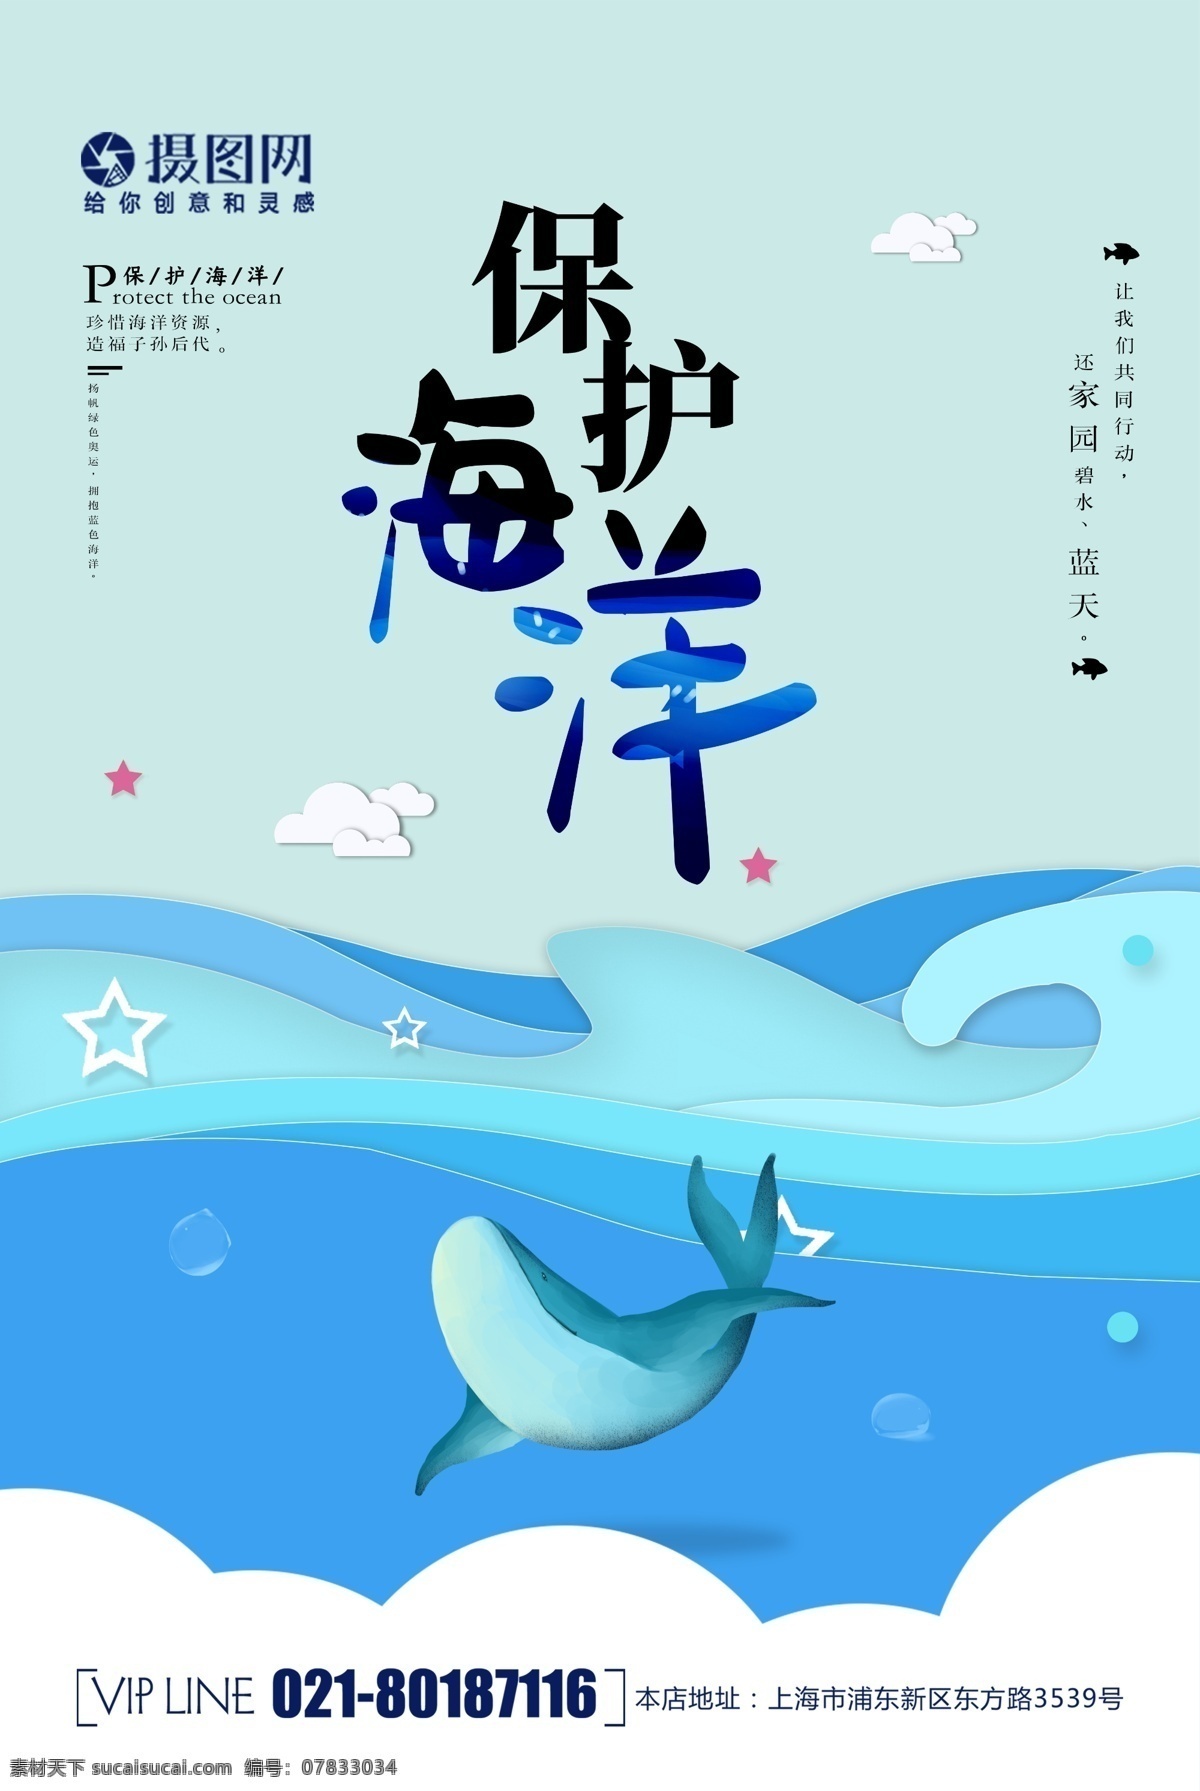 简约 大气 保护 海洋 公益 海报 保护海洋 环境 公益海报 蓝色 清新 海 海豚 海边 保护自然环境